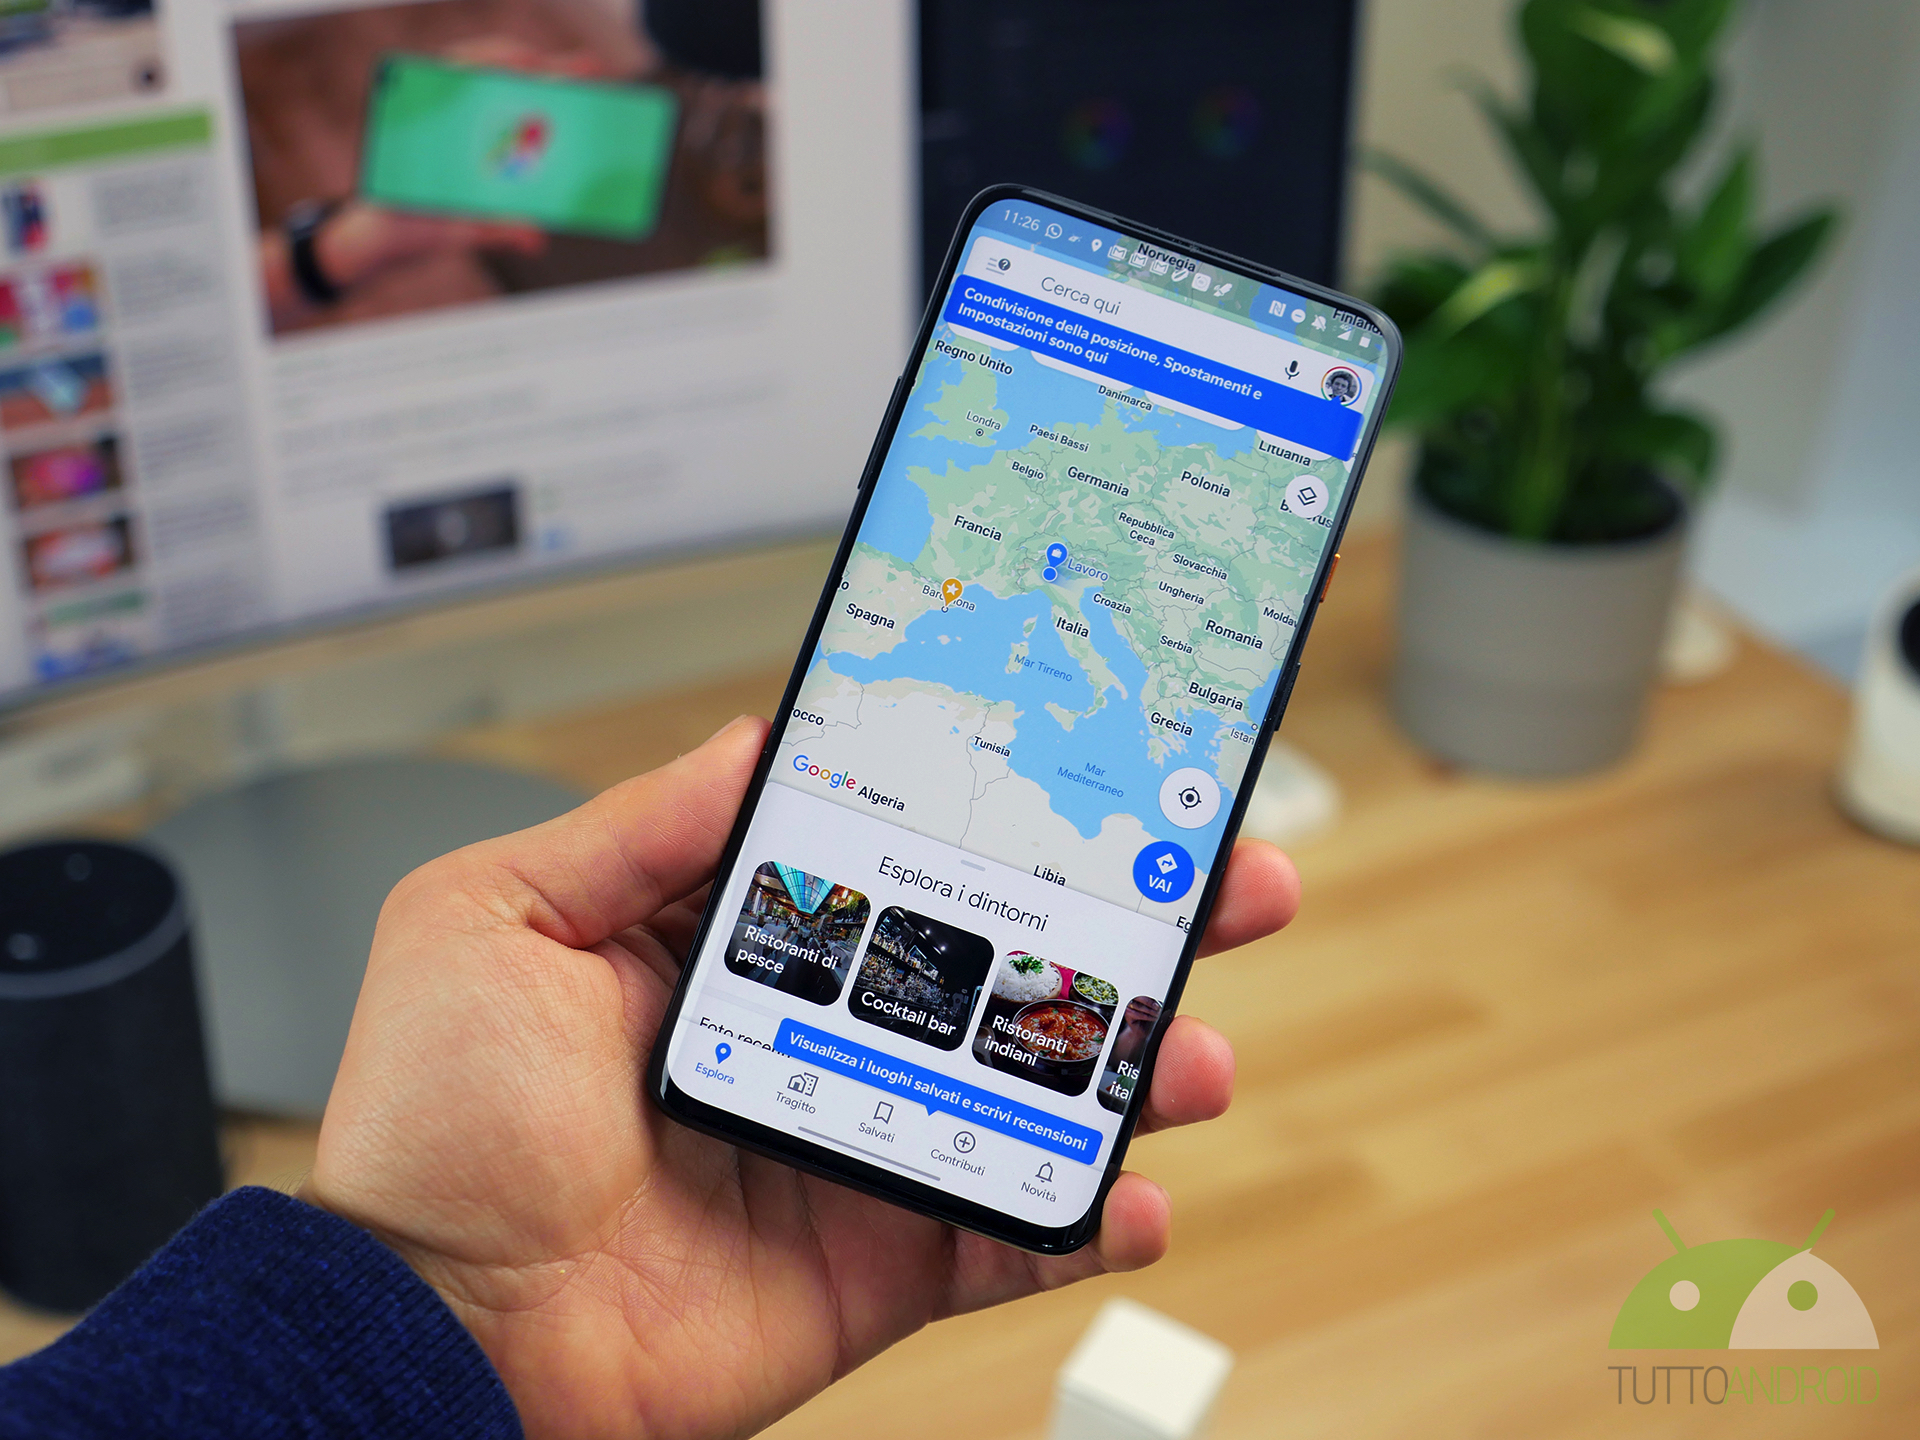 L’app Google Maps ottiene un piccolo aggiornamento dell’interfaccia